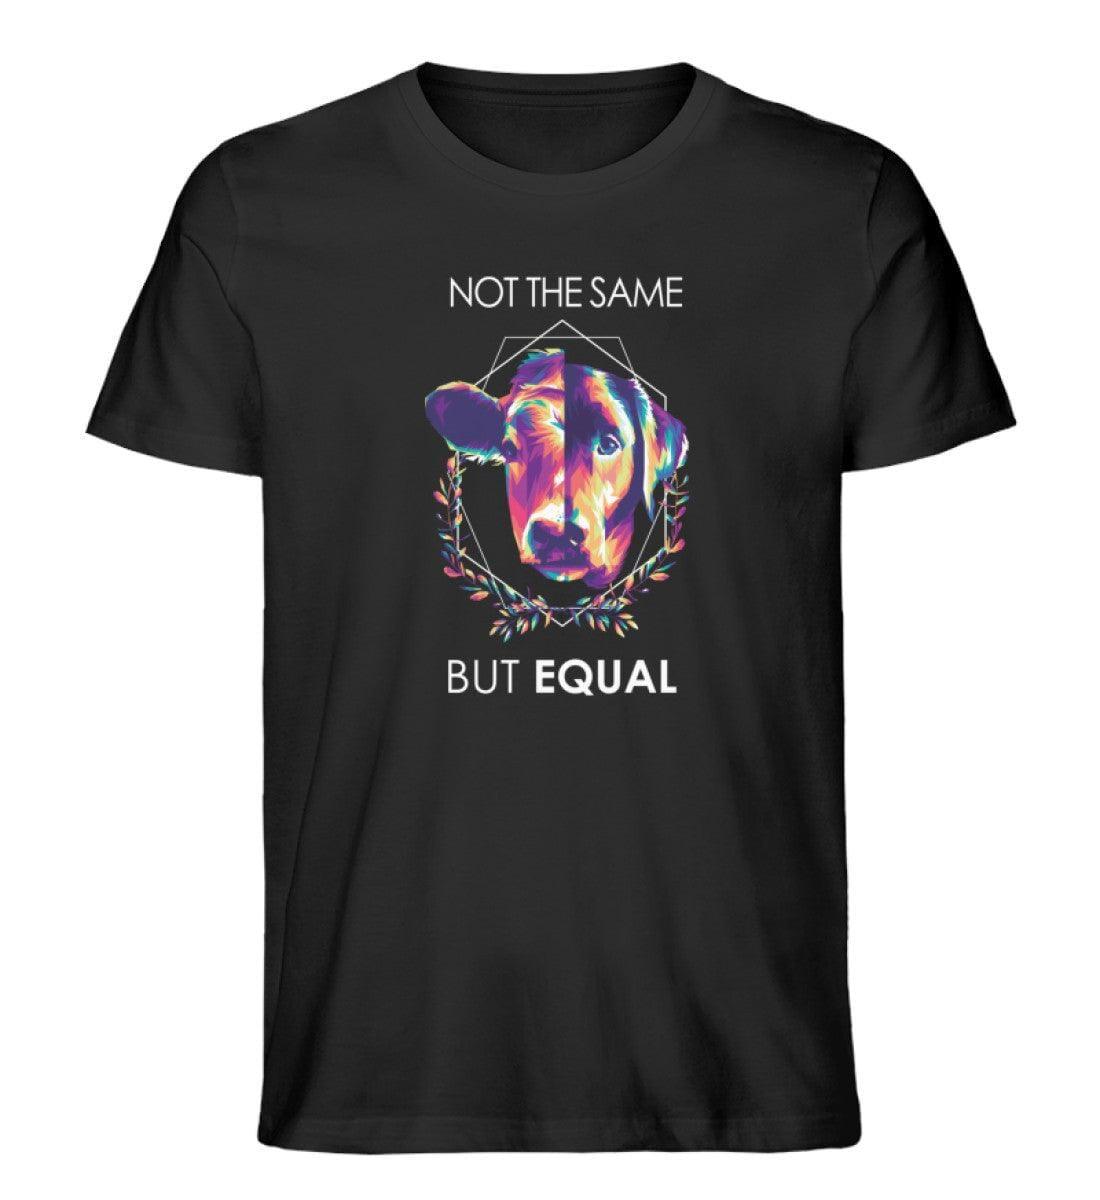 Not the same but equal - Unisex Organic Shirt Rocker T-Shirt ST/ST Shirtee Schwarz S 